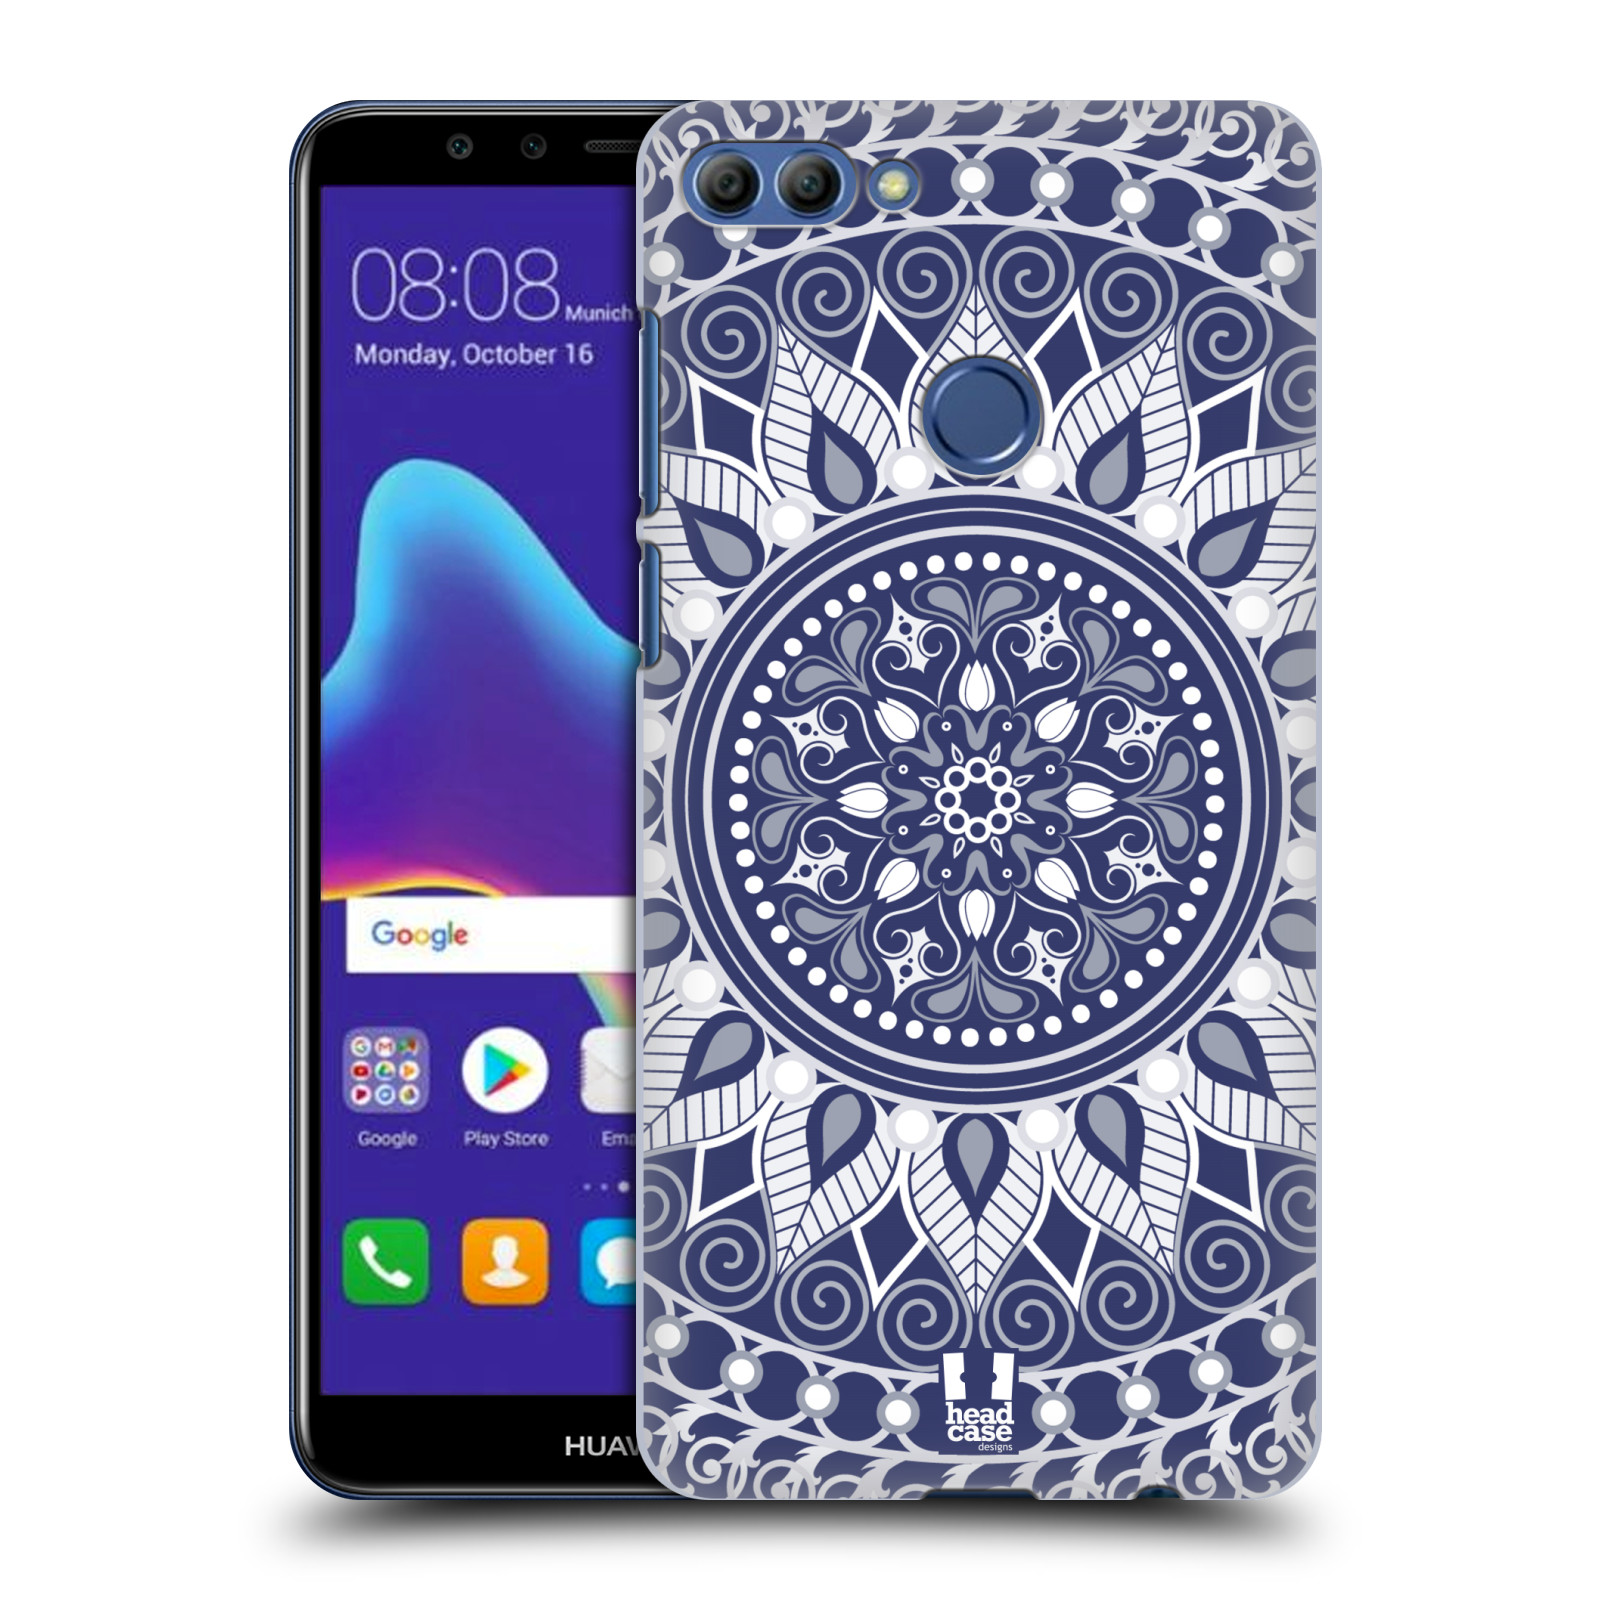 HEAD CASE plastový obal na mobil Huawei Y9 2018 vzor Indie Mandala slunce barevný motiv MODRÁ